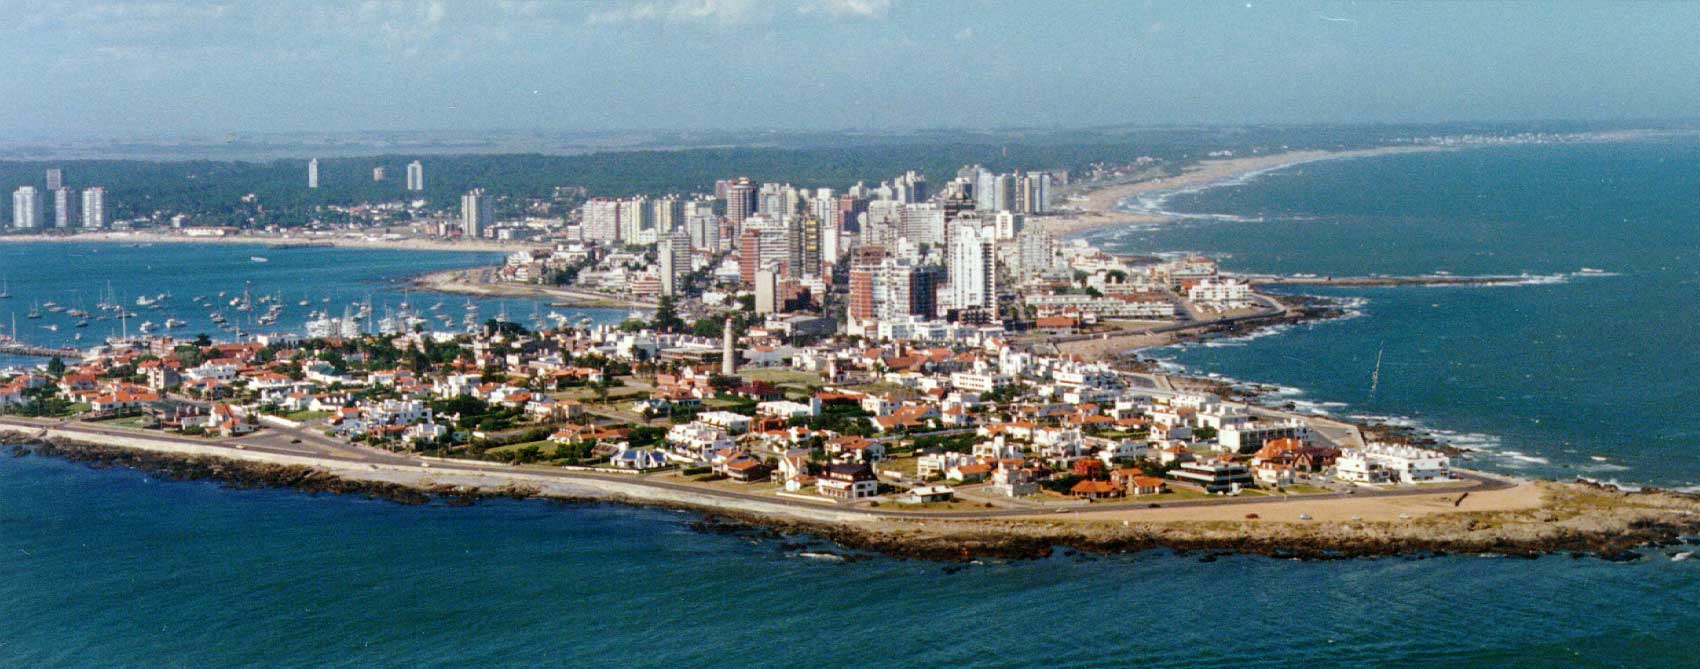 fondo de pantalla de uruguay,área metropolitana,ciudad,fotografía aérea,área urbana,paisaje urbano